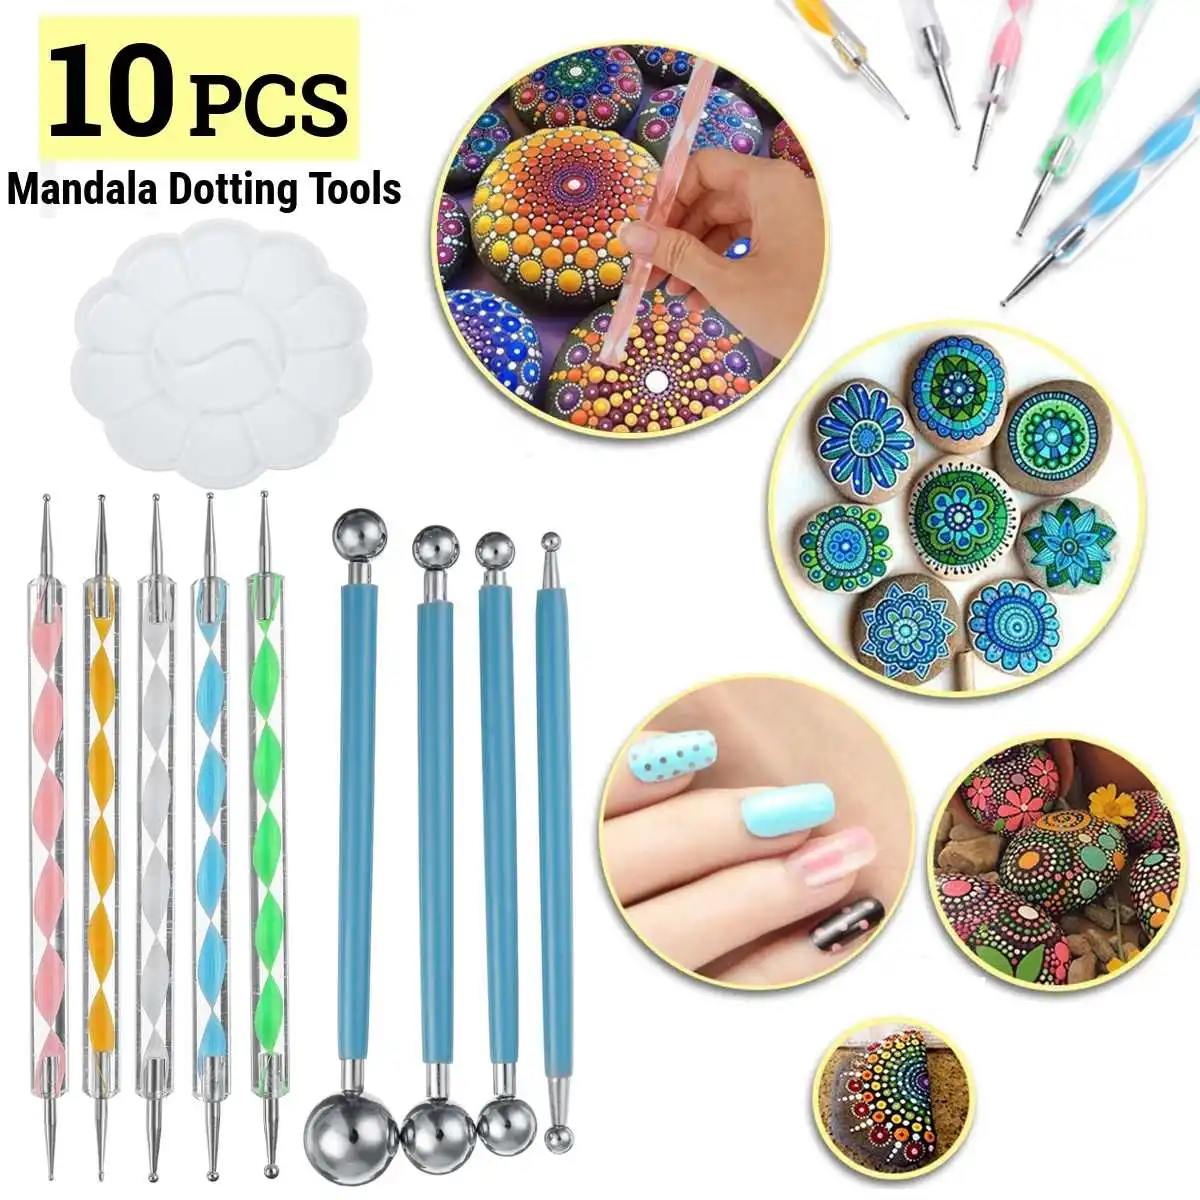 USA 13Pcs Mandala Dotting Tools Art For Rock Painting Kit Dot Pen Paint Stencil 